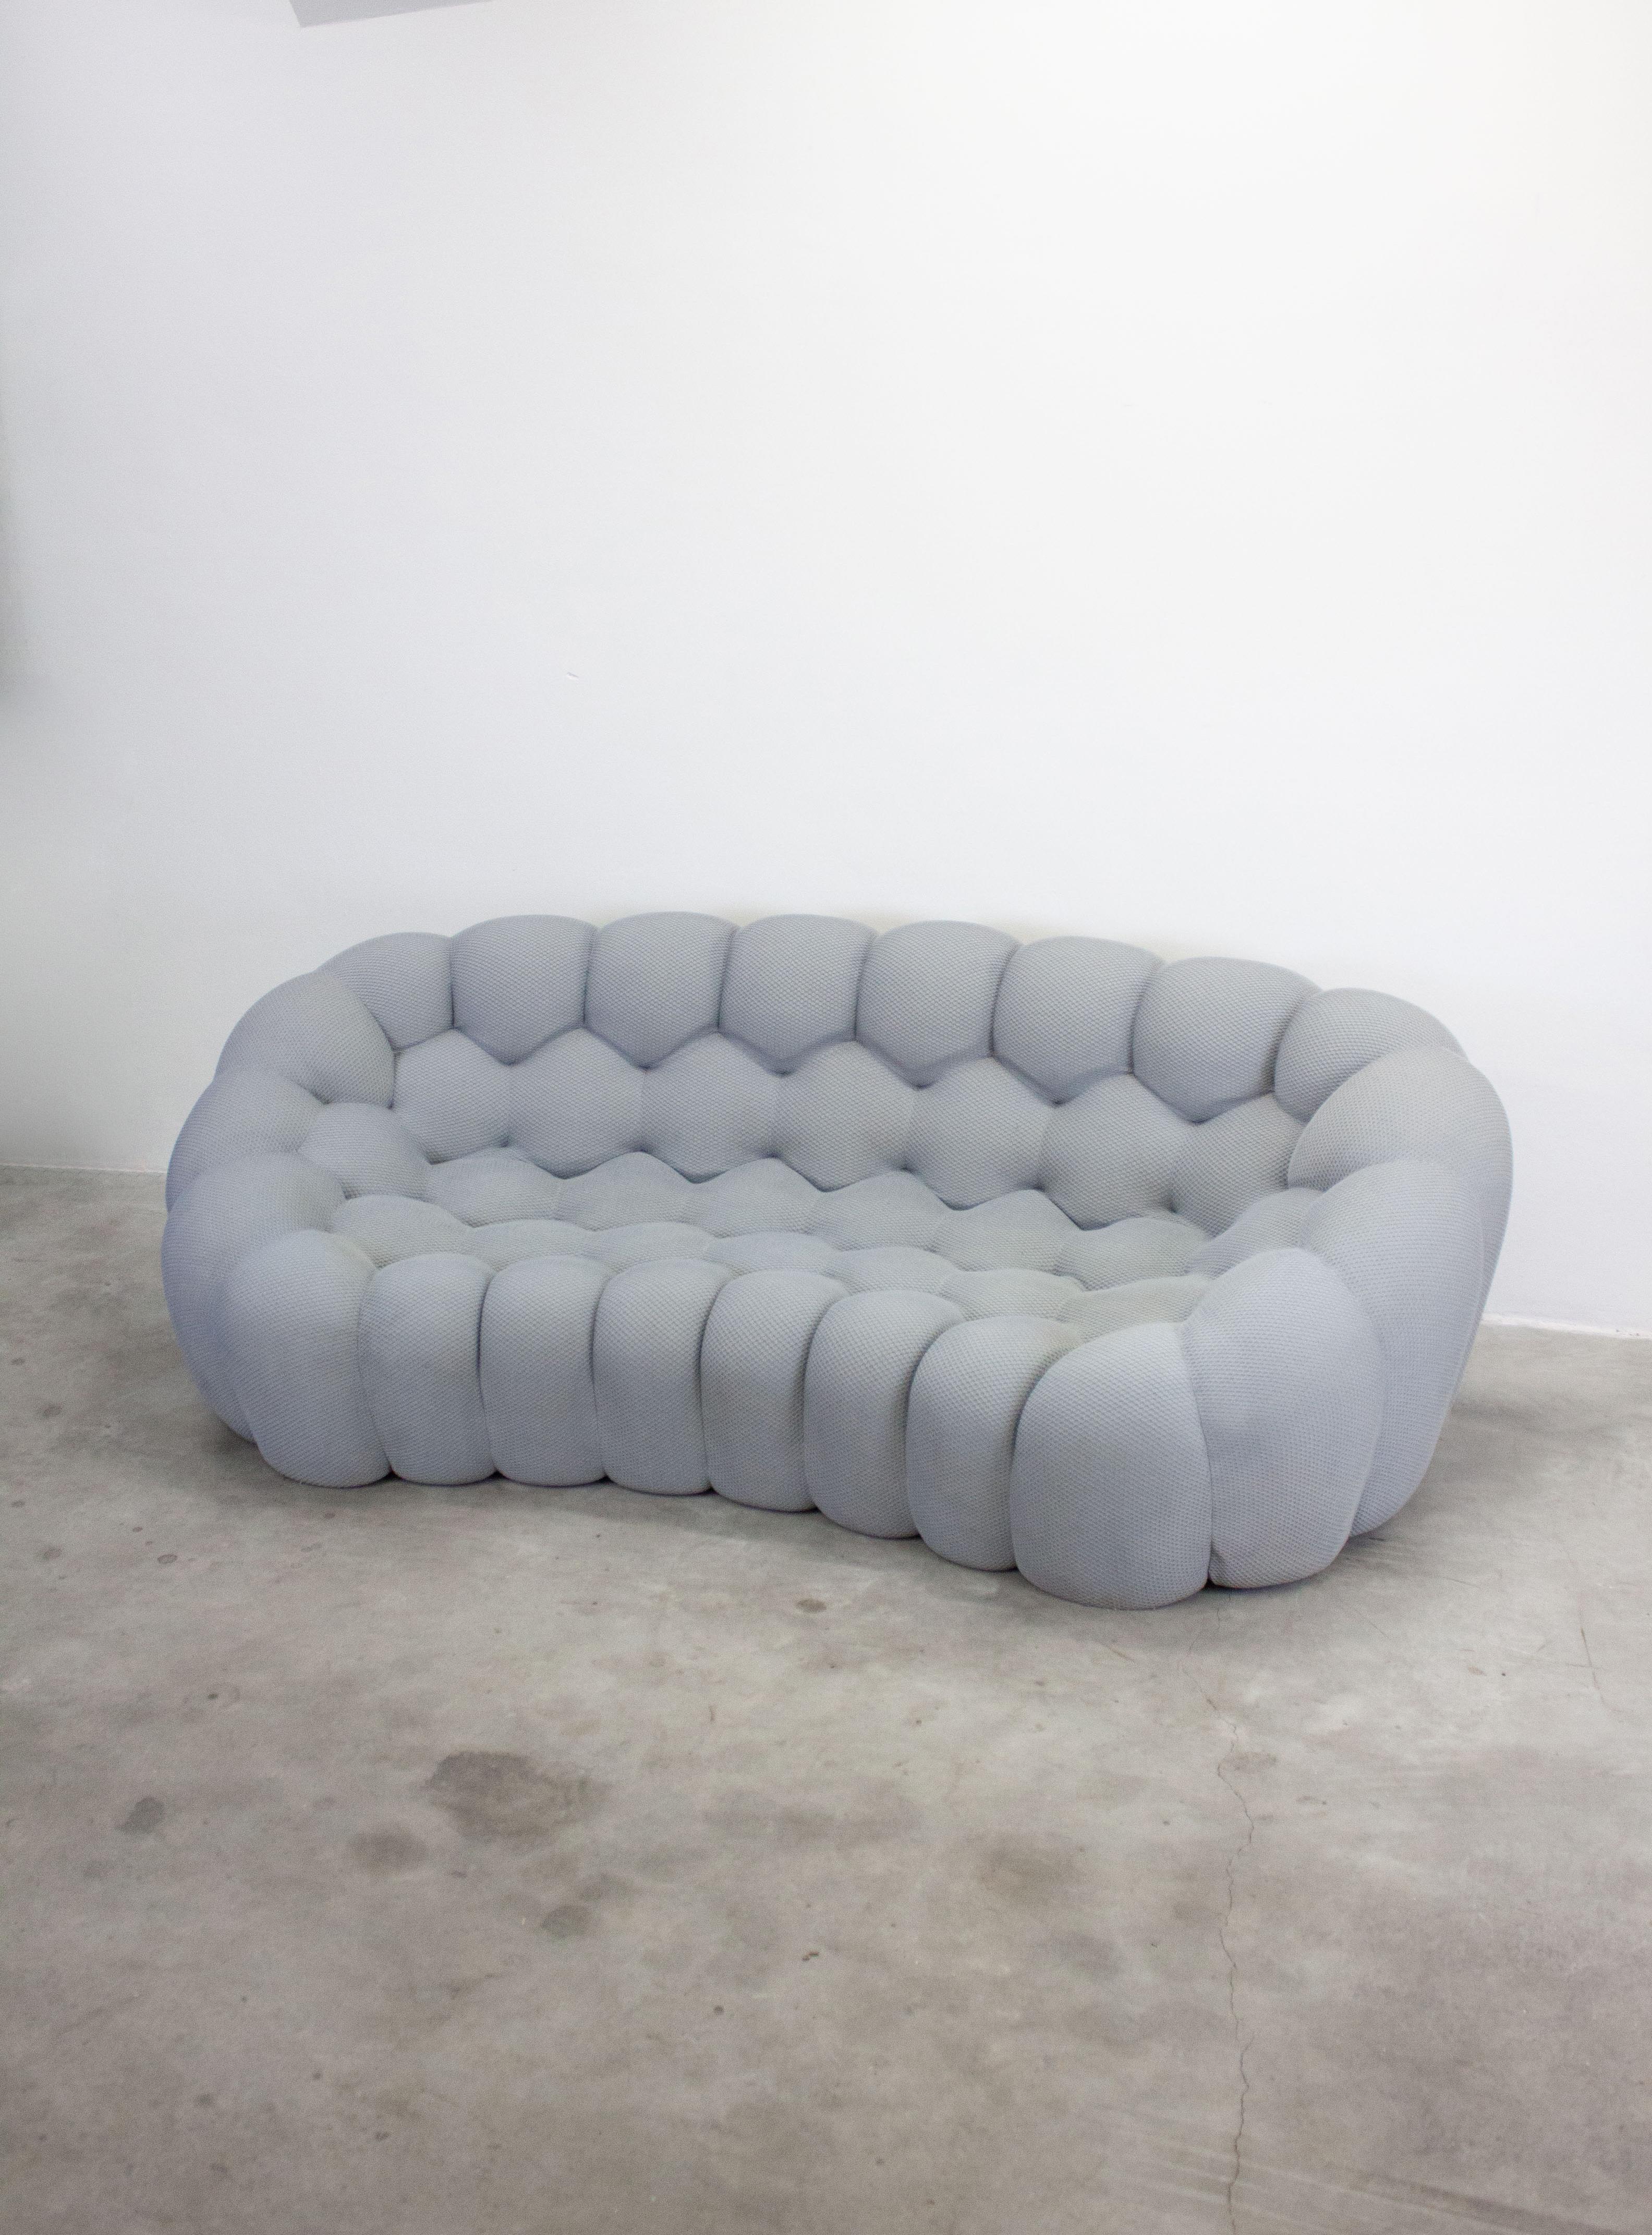 Das Bubble Sofa ist Ausdruck des Gleichgewichts zwischen Innovation, Funktion und Emotion. Das Design von Sacha Lakic, der eine Leidenschaft für Spitzentechnologie hat, wurde von natürlichen und mineralischen Formen inspiriert. Das Bubble-Design